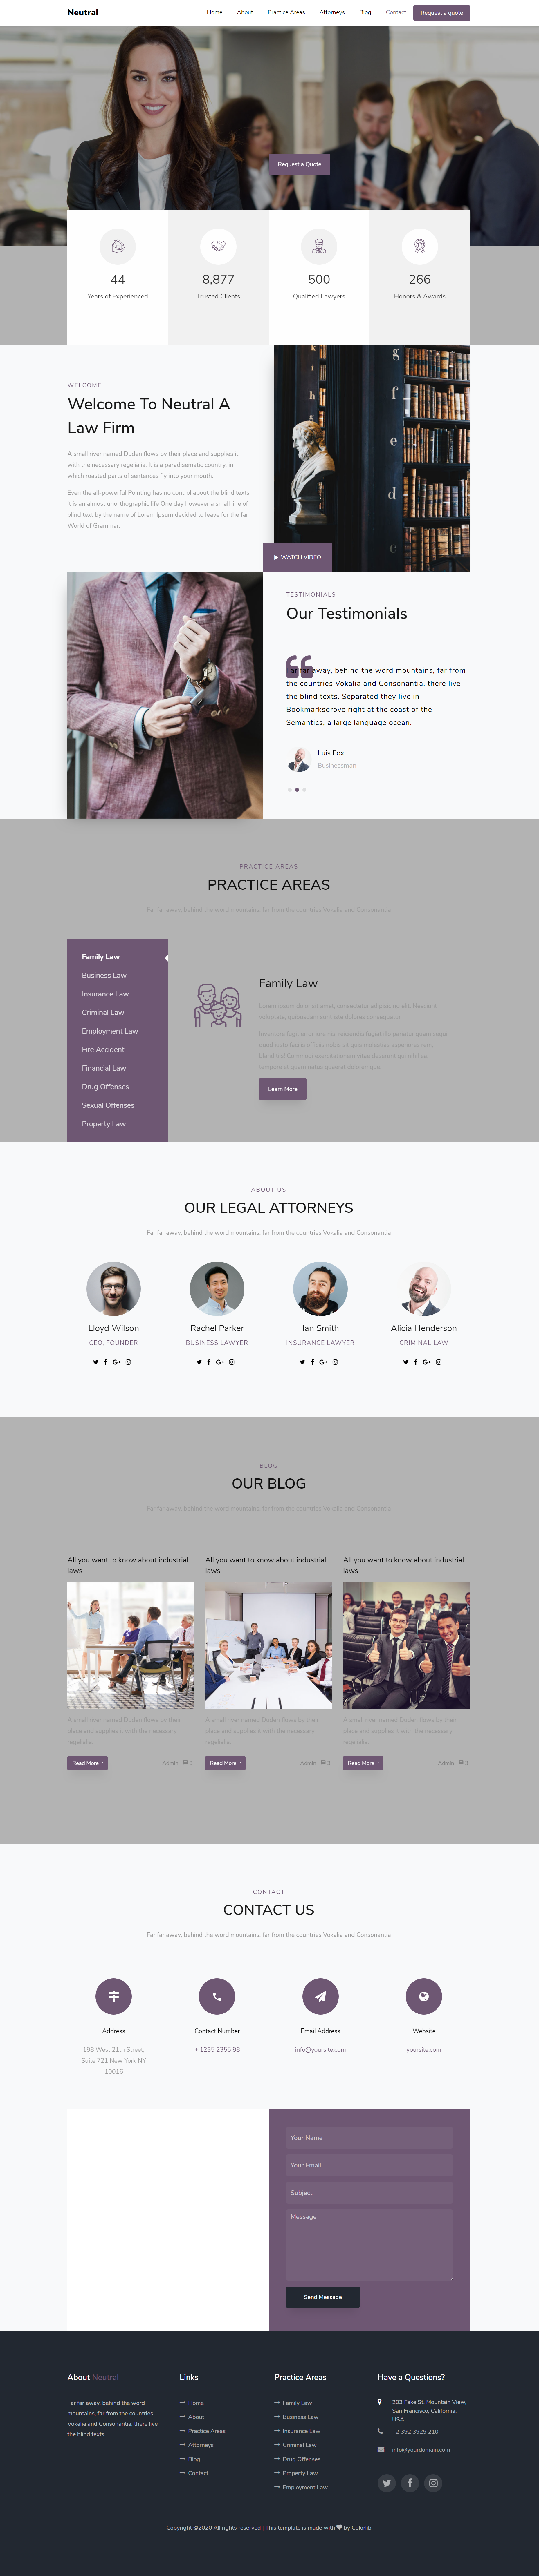 HTML5紫色宽屏样式中立律师事务所网页模板代码下载